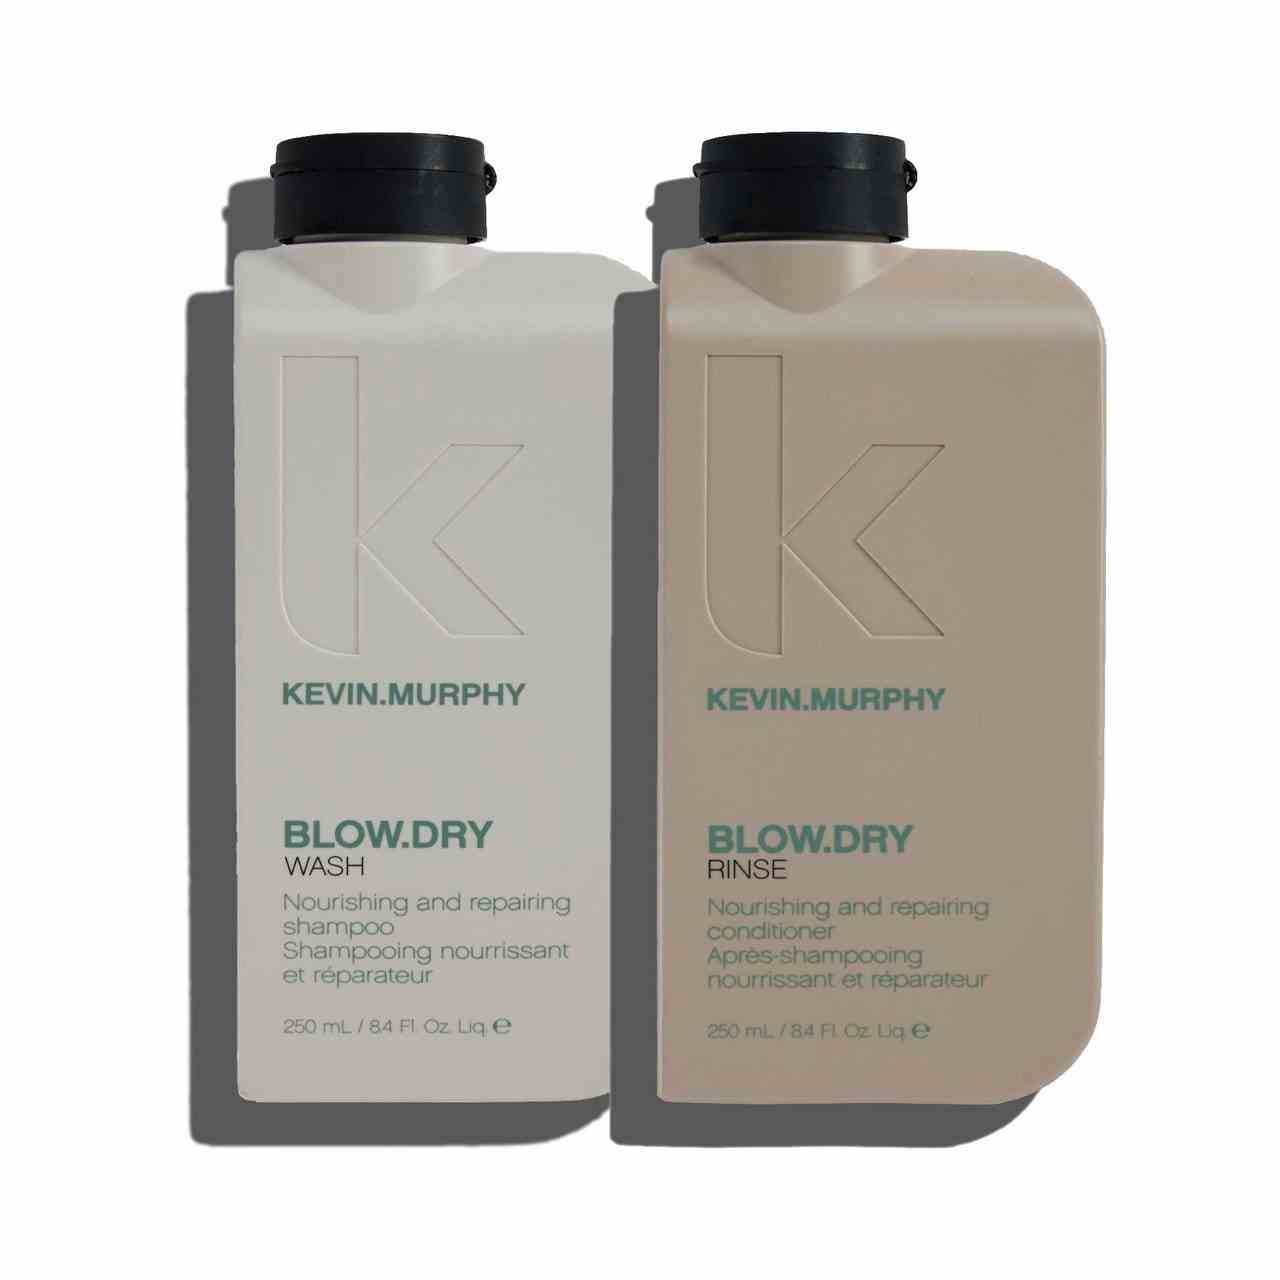 Kevin Murphy Blow.Dry Wash & Rinse graue und beige rechteckige Flaschen mit schwarzen Kappen auf weißem Hintergrund